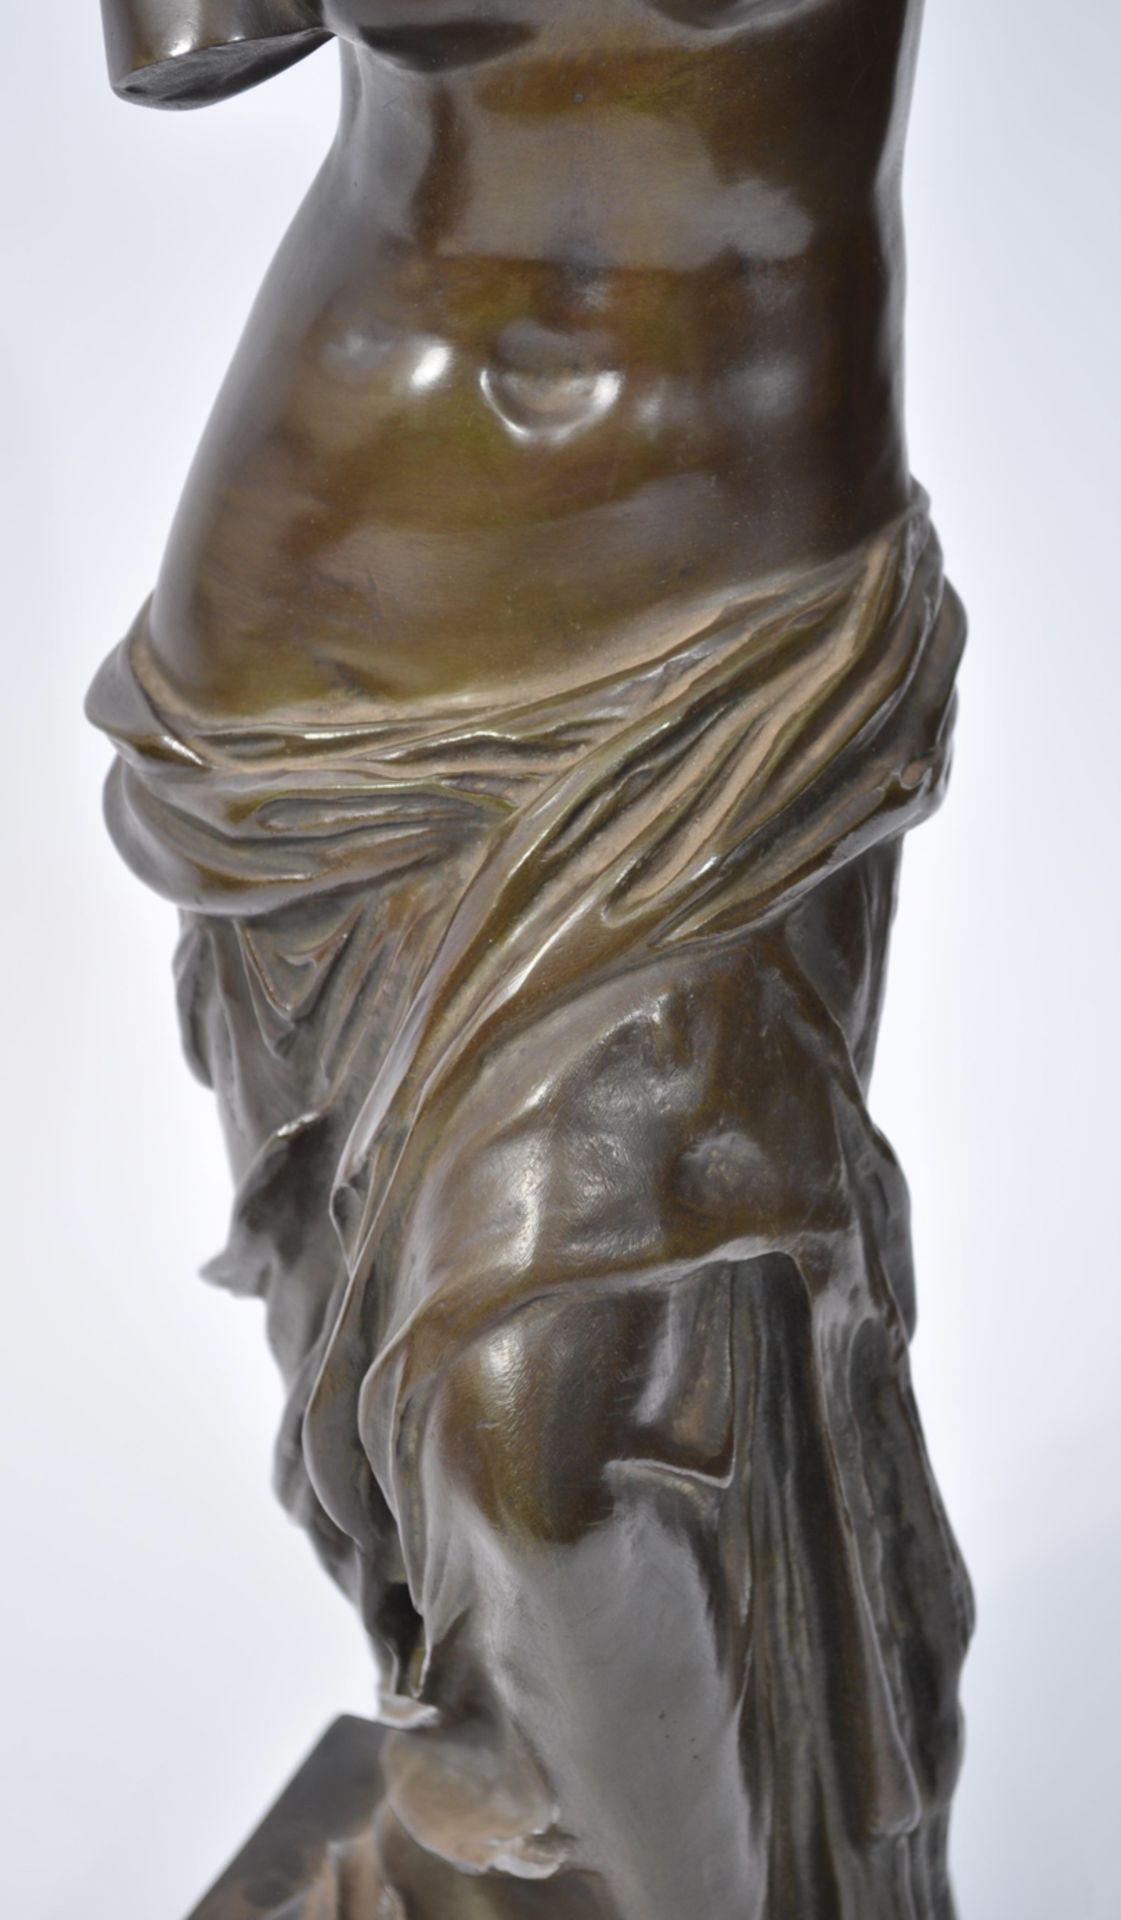 Large C19th bronze of Venice de Milo 65 cms tall - Image 3 of 5